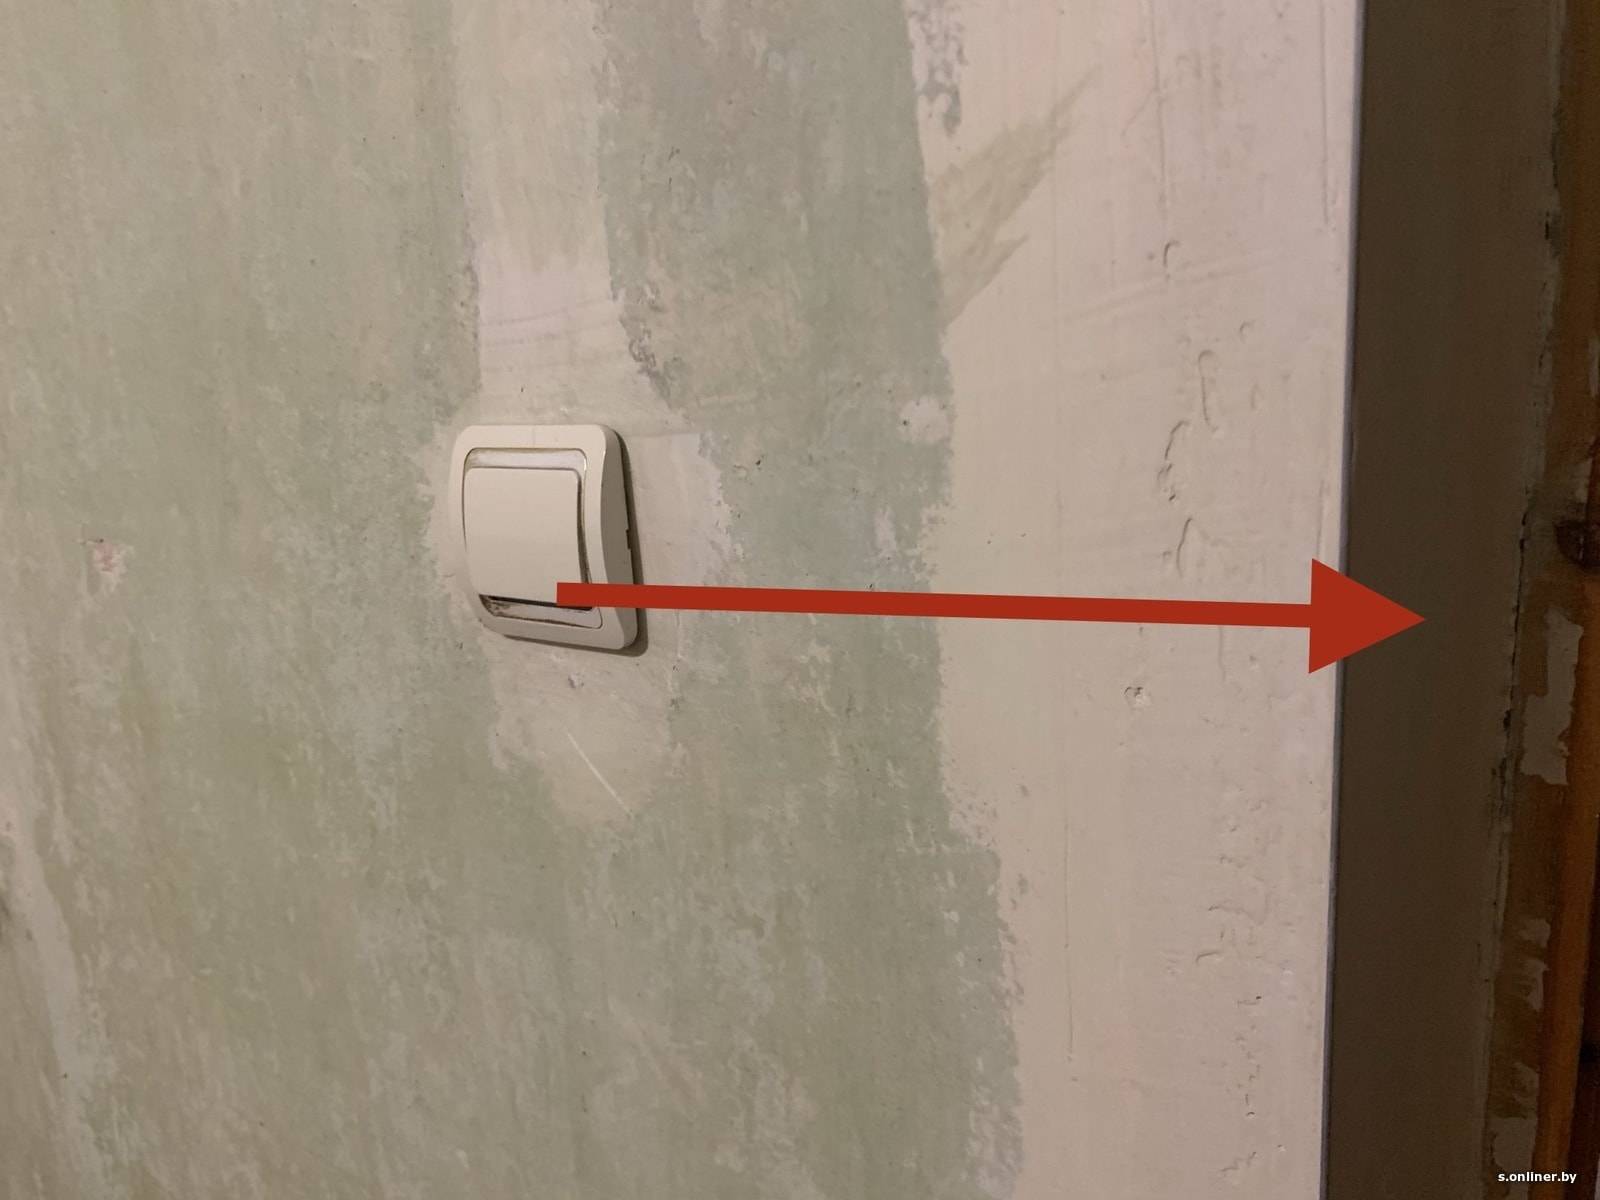 Способы переноса выключателя без штробления стен